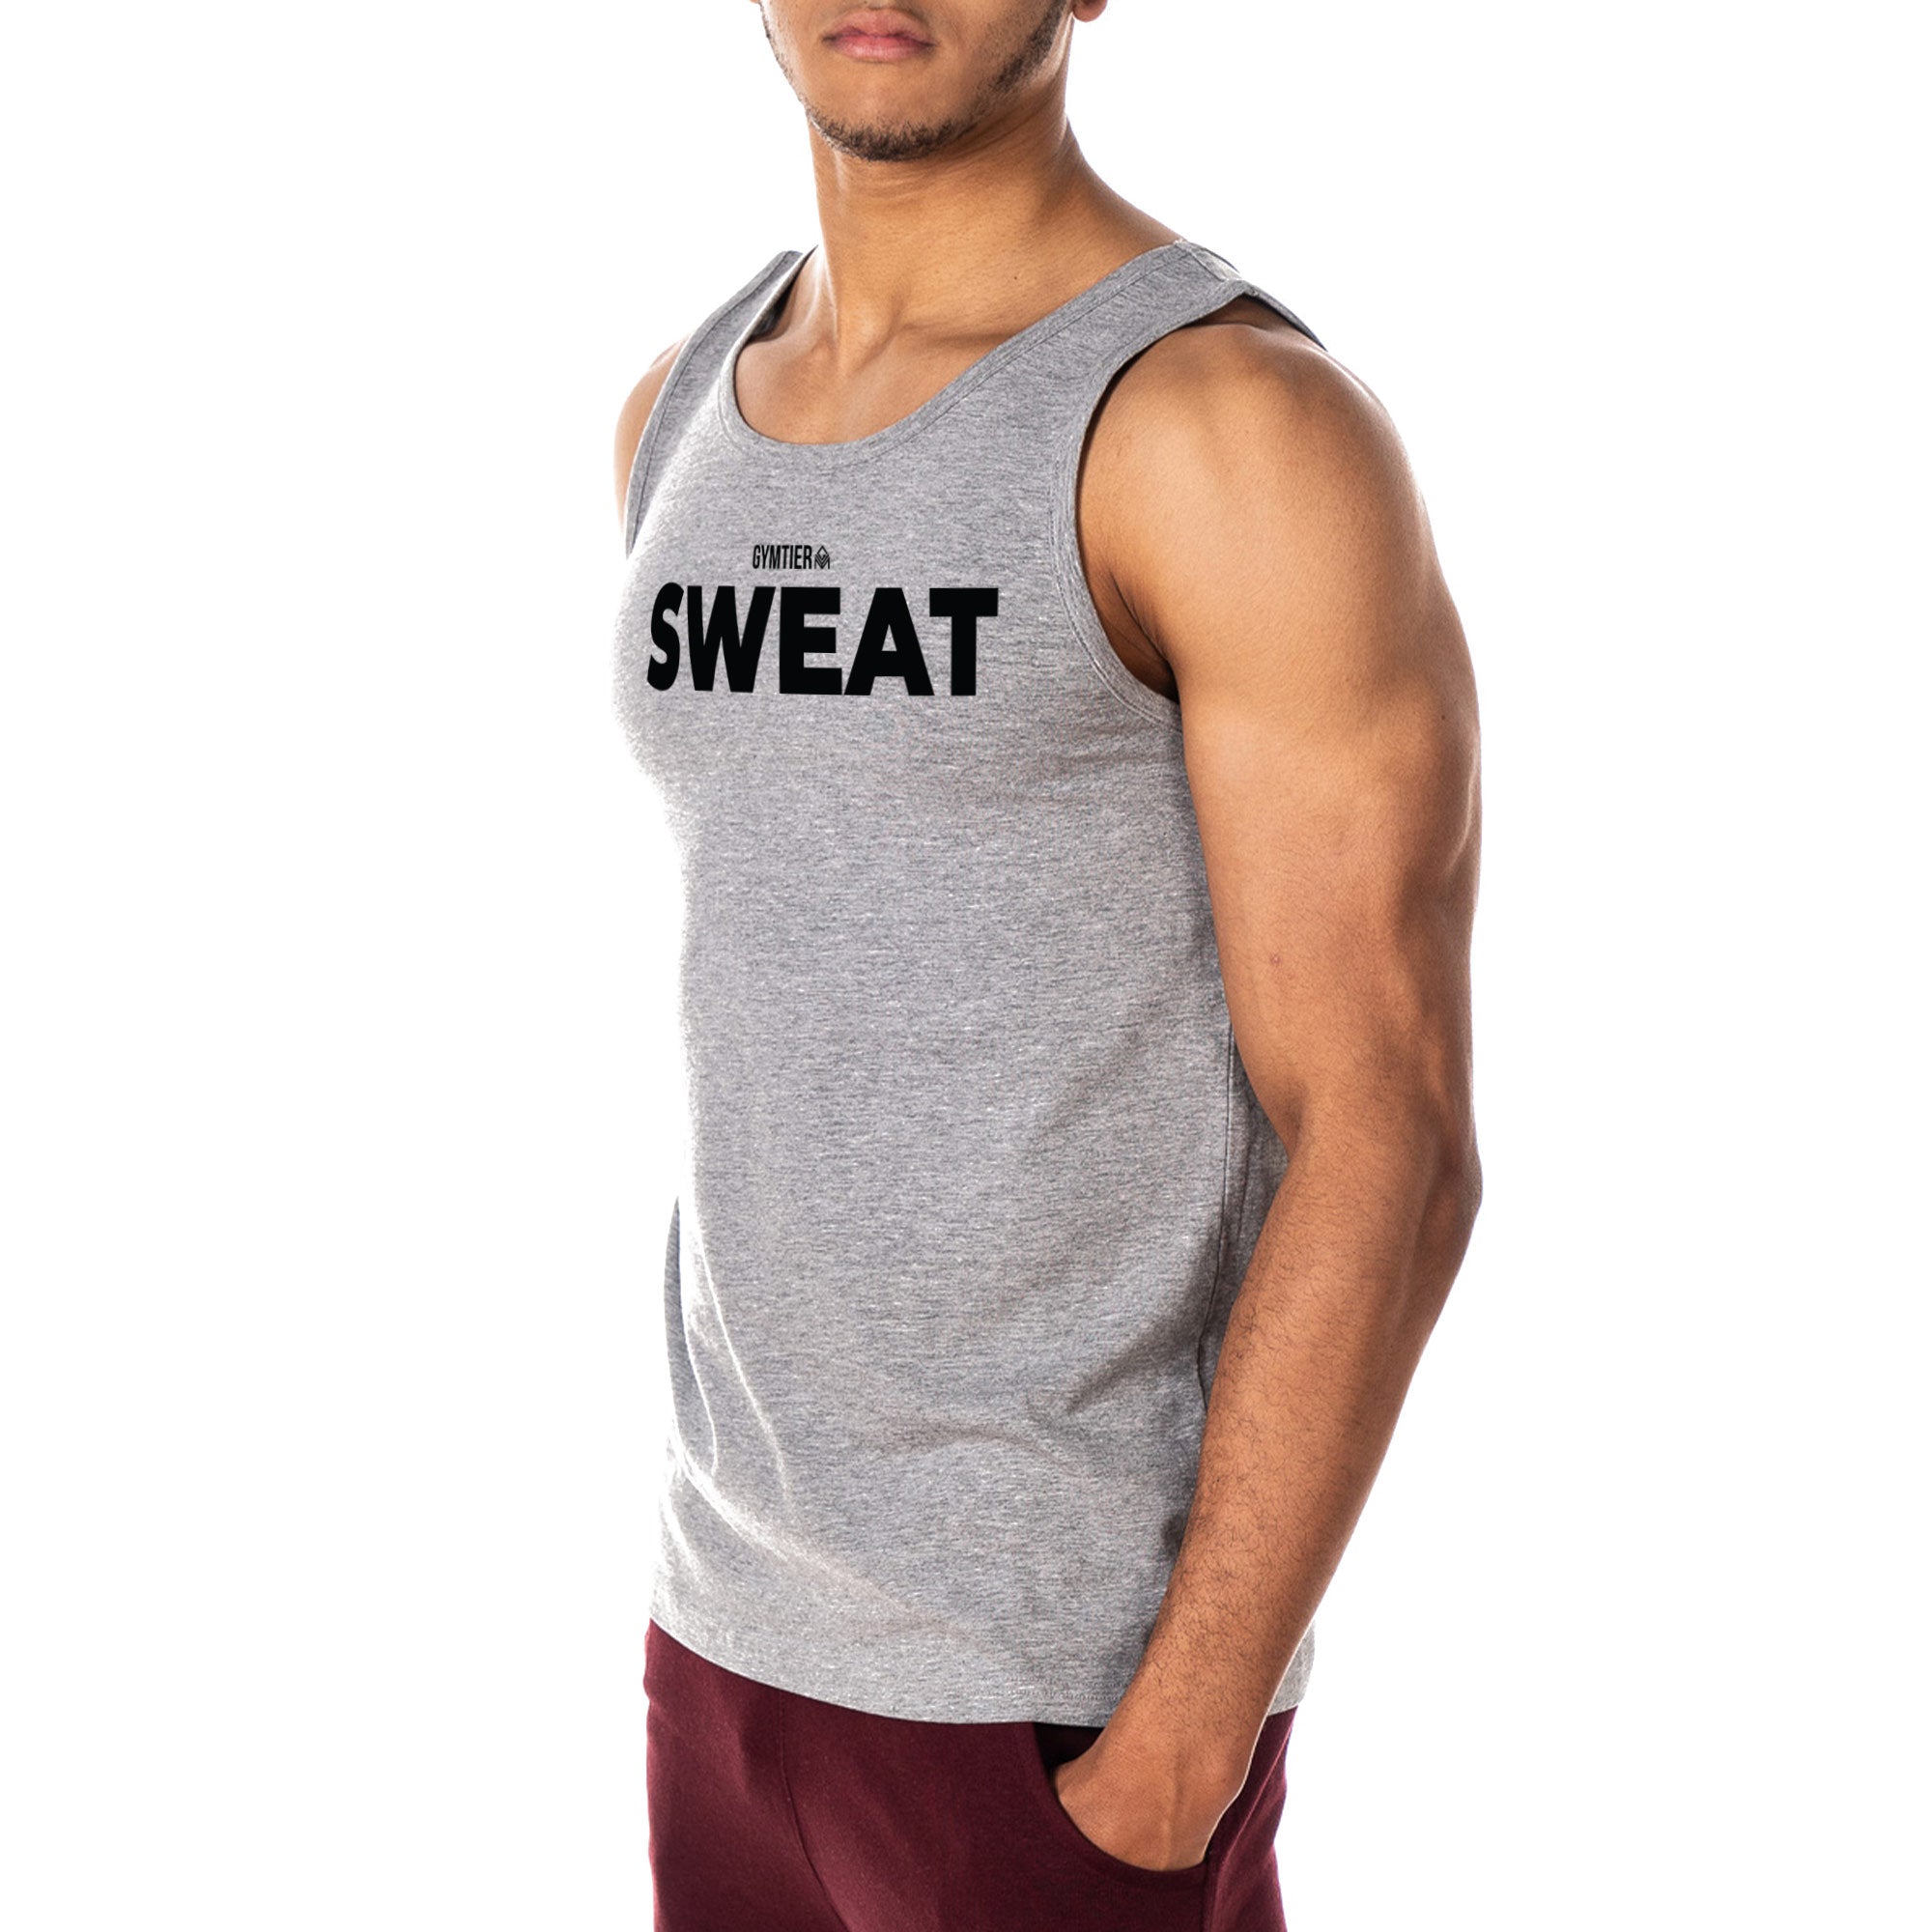 GYMTIER Sweat Gym Vest